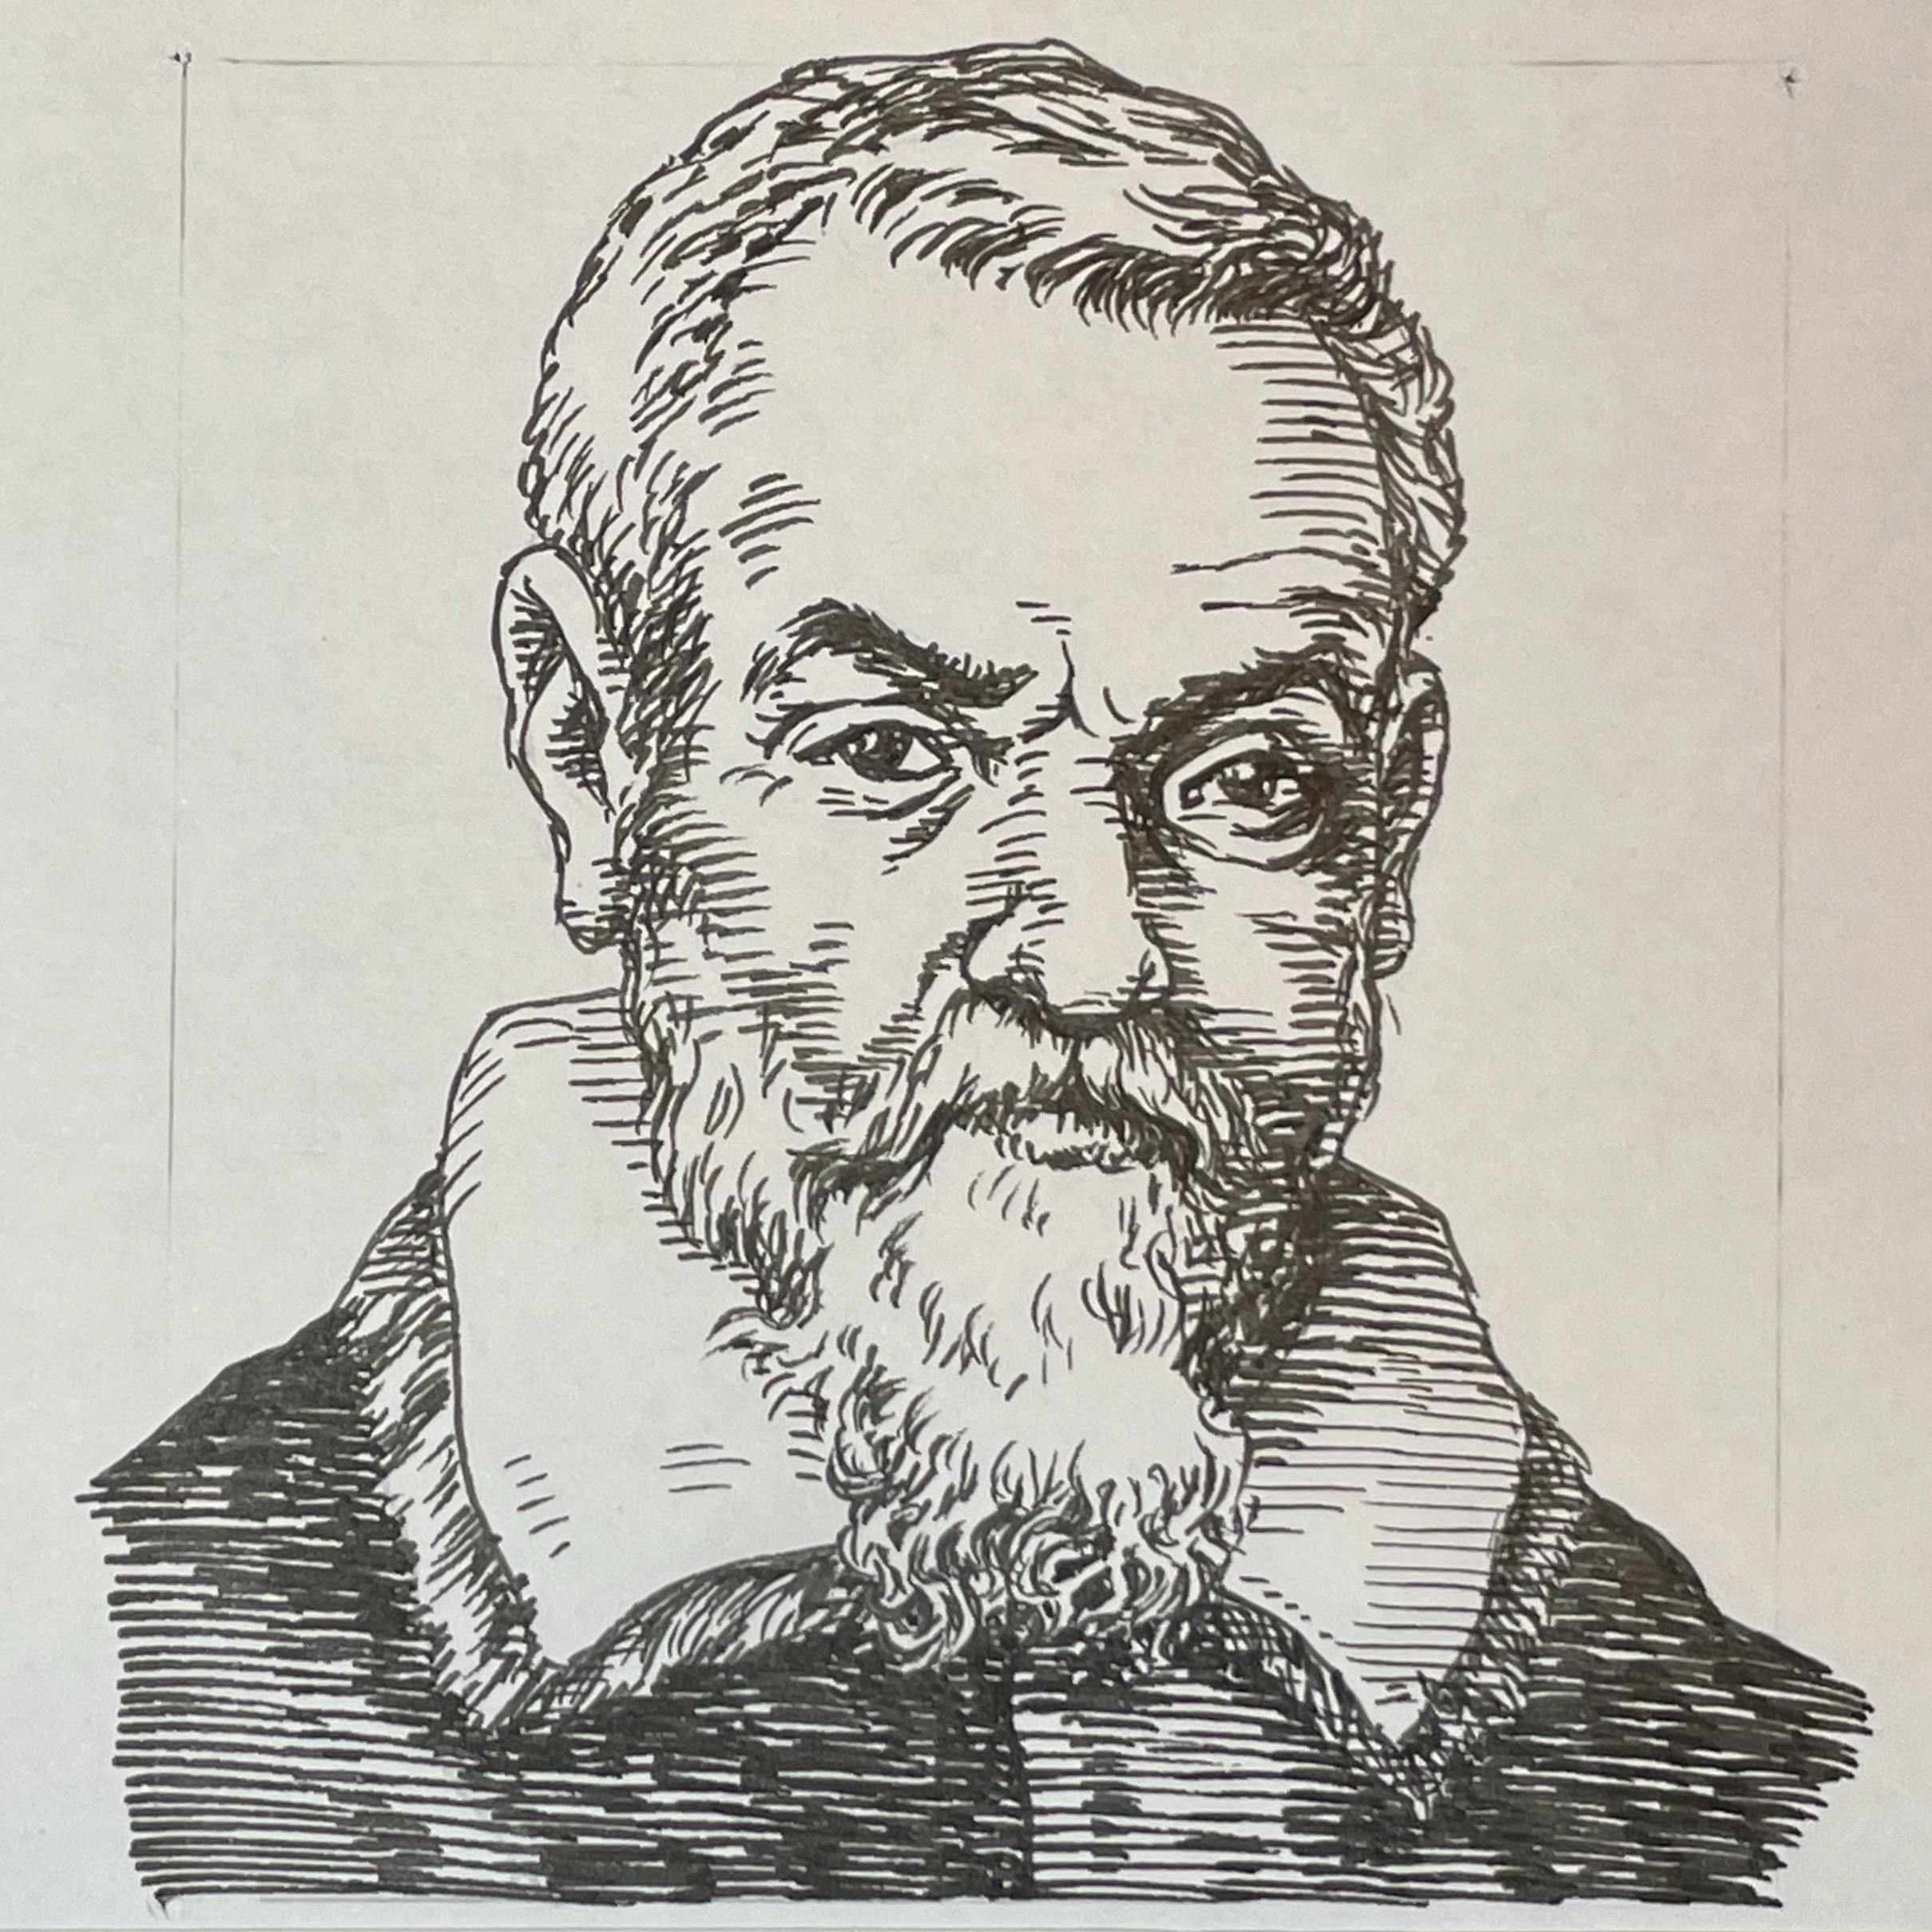 1561-1636を生きた医学者。世界最古の大学と目されるパドヴァ大学で哲学を、その後アルクア大学で医学を学び21歳という若さで学位を取得した。その後出身大学のパドヴァ大学医学教授となり、体重、体温、心拍数などのホメオスタシス研究を行った。特に1614年に著したDe Statica medicinaに不感発汗を報告したことでその名を刻んでいる。